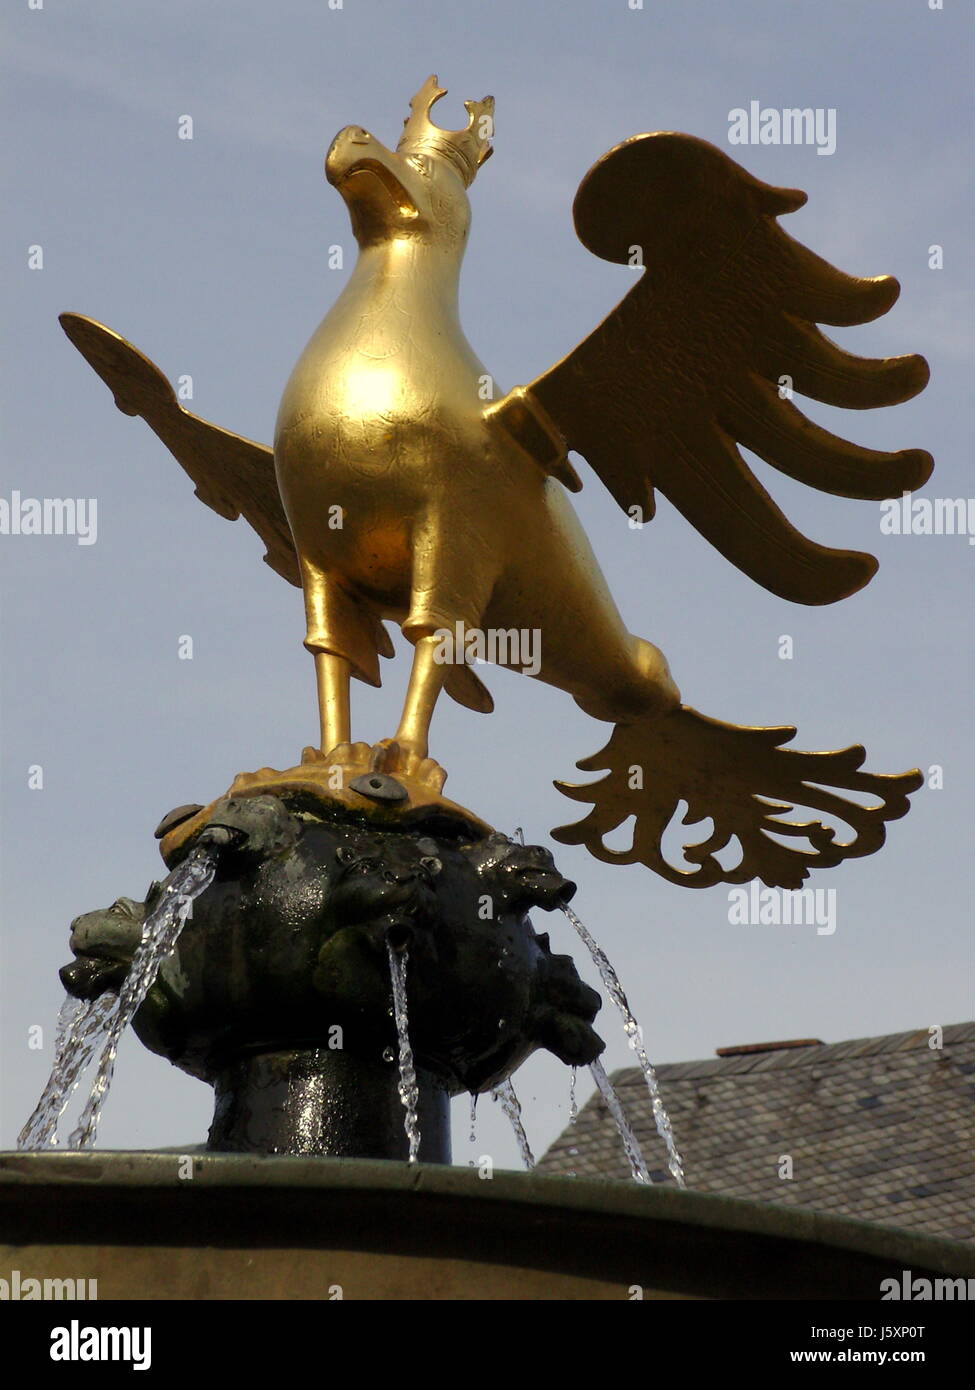 Harz-Brunnen Adler gold Harz Brunnen Adler gold Wasser alt Goslar goslar  Stockfotografie - Alamy